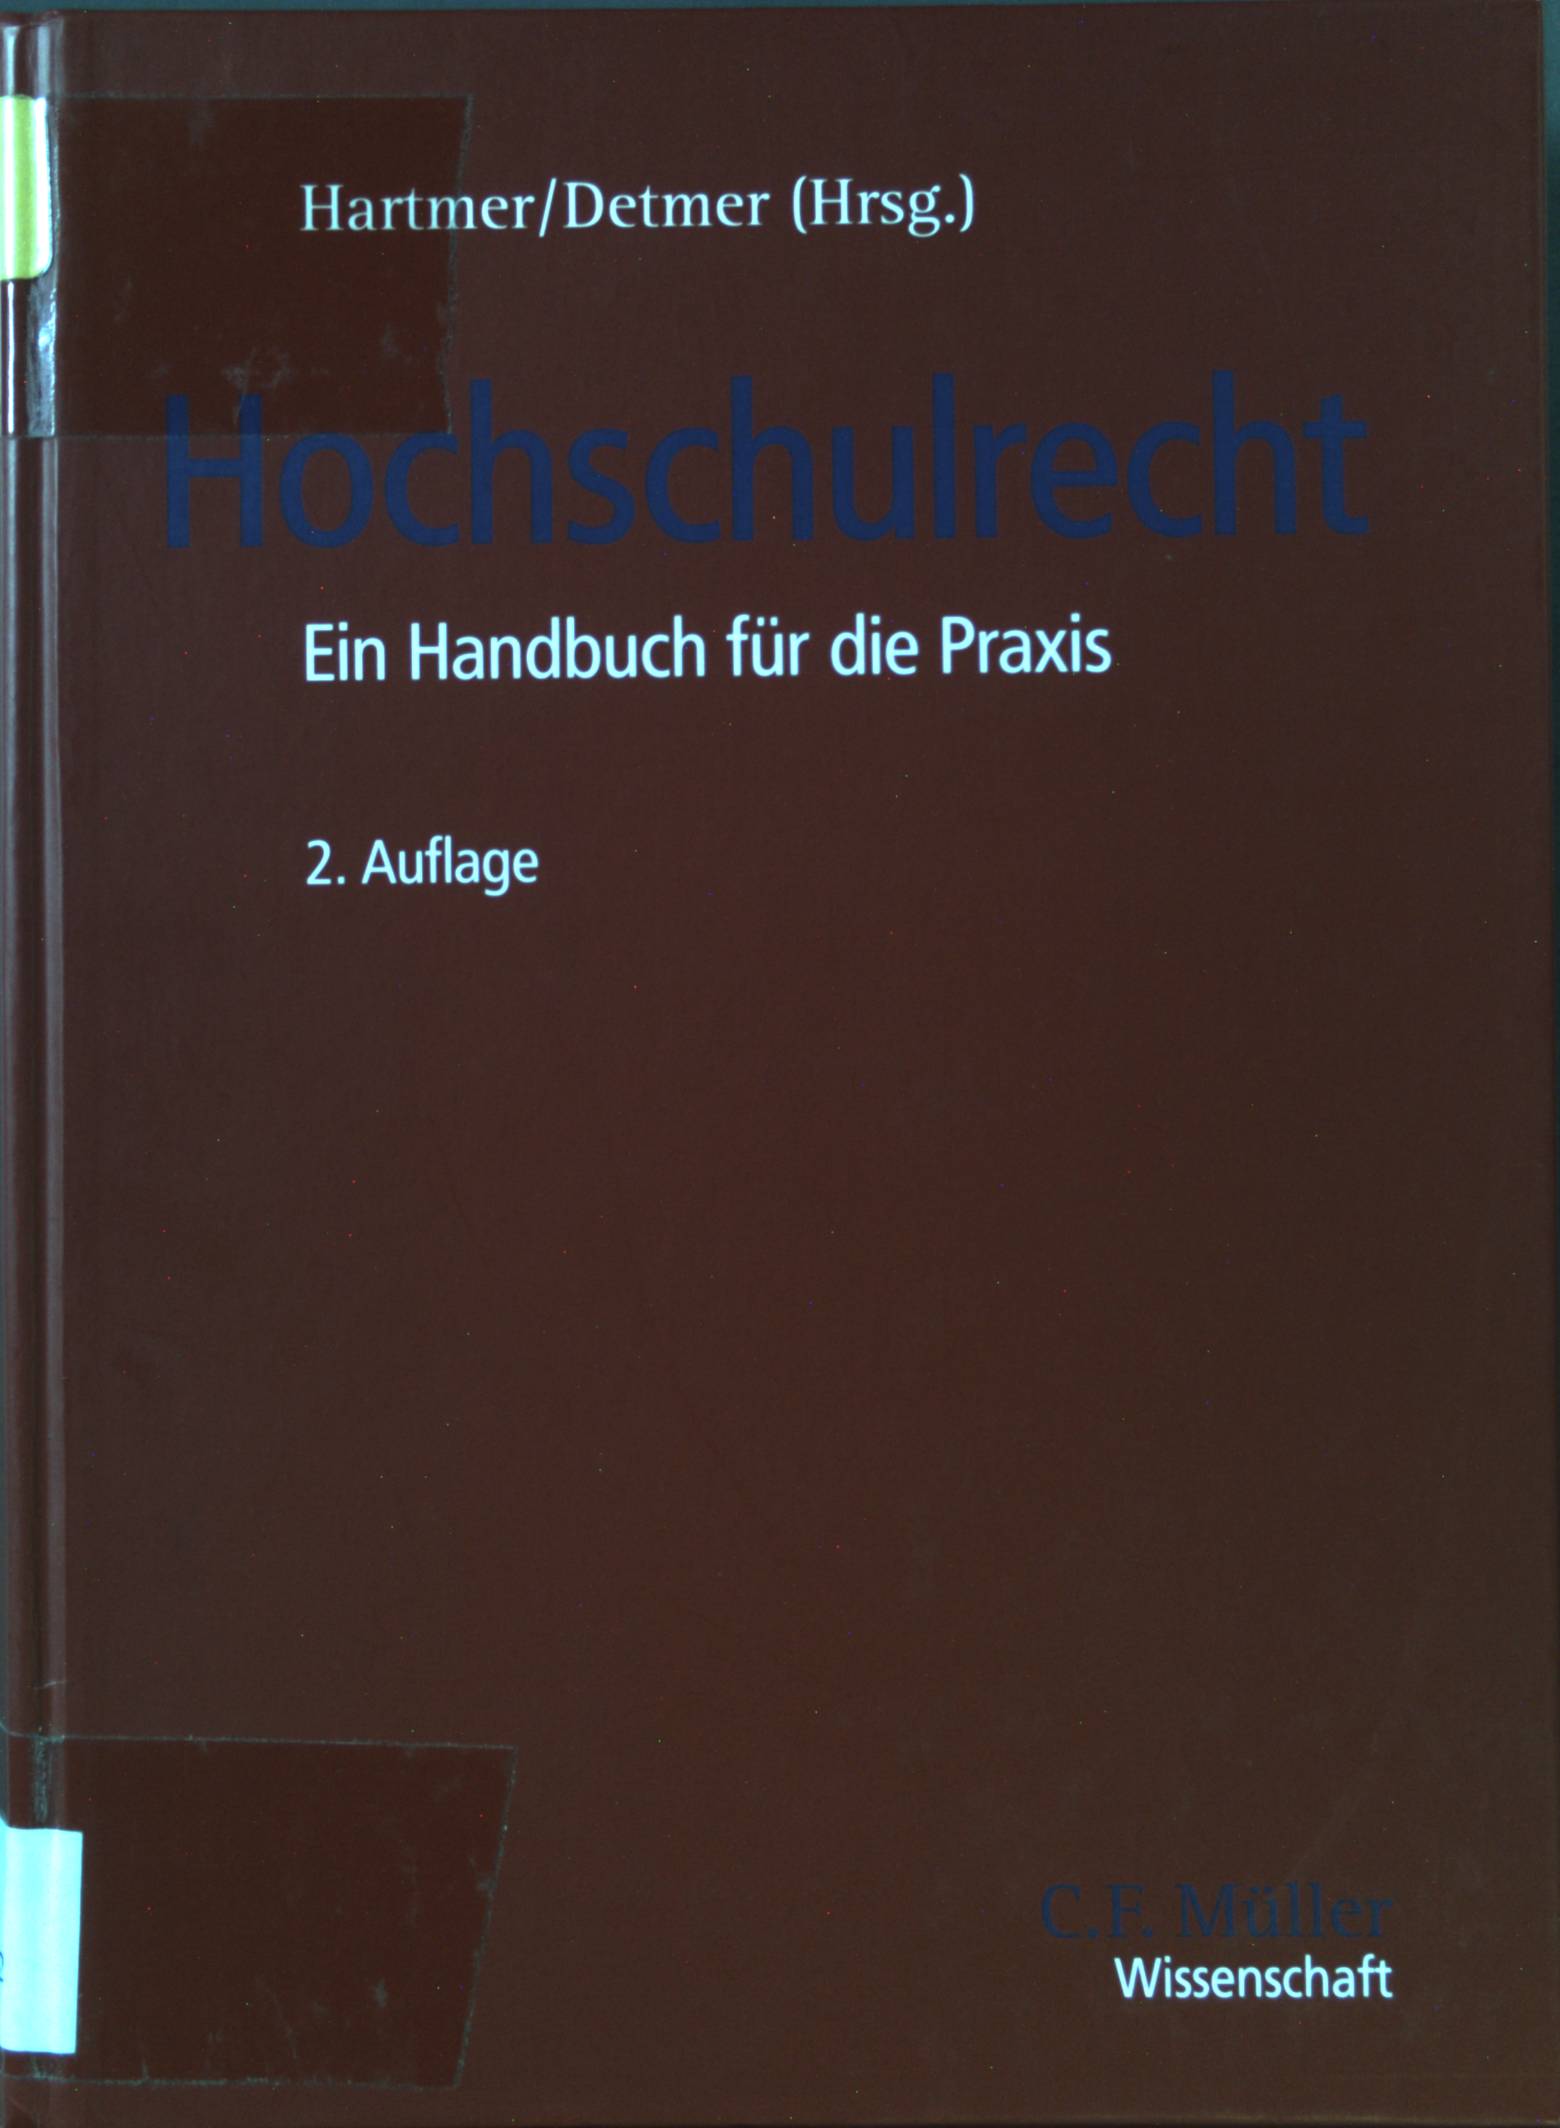 Hochschulrecht : ein Handbuch für die Praxis - Hartmer, Michael, Christian von Coelln Hubert Detmer u. a.